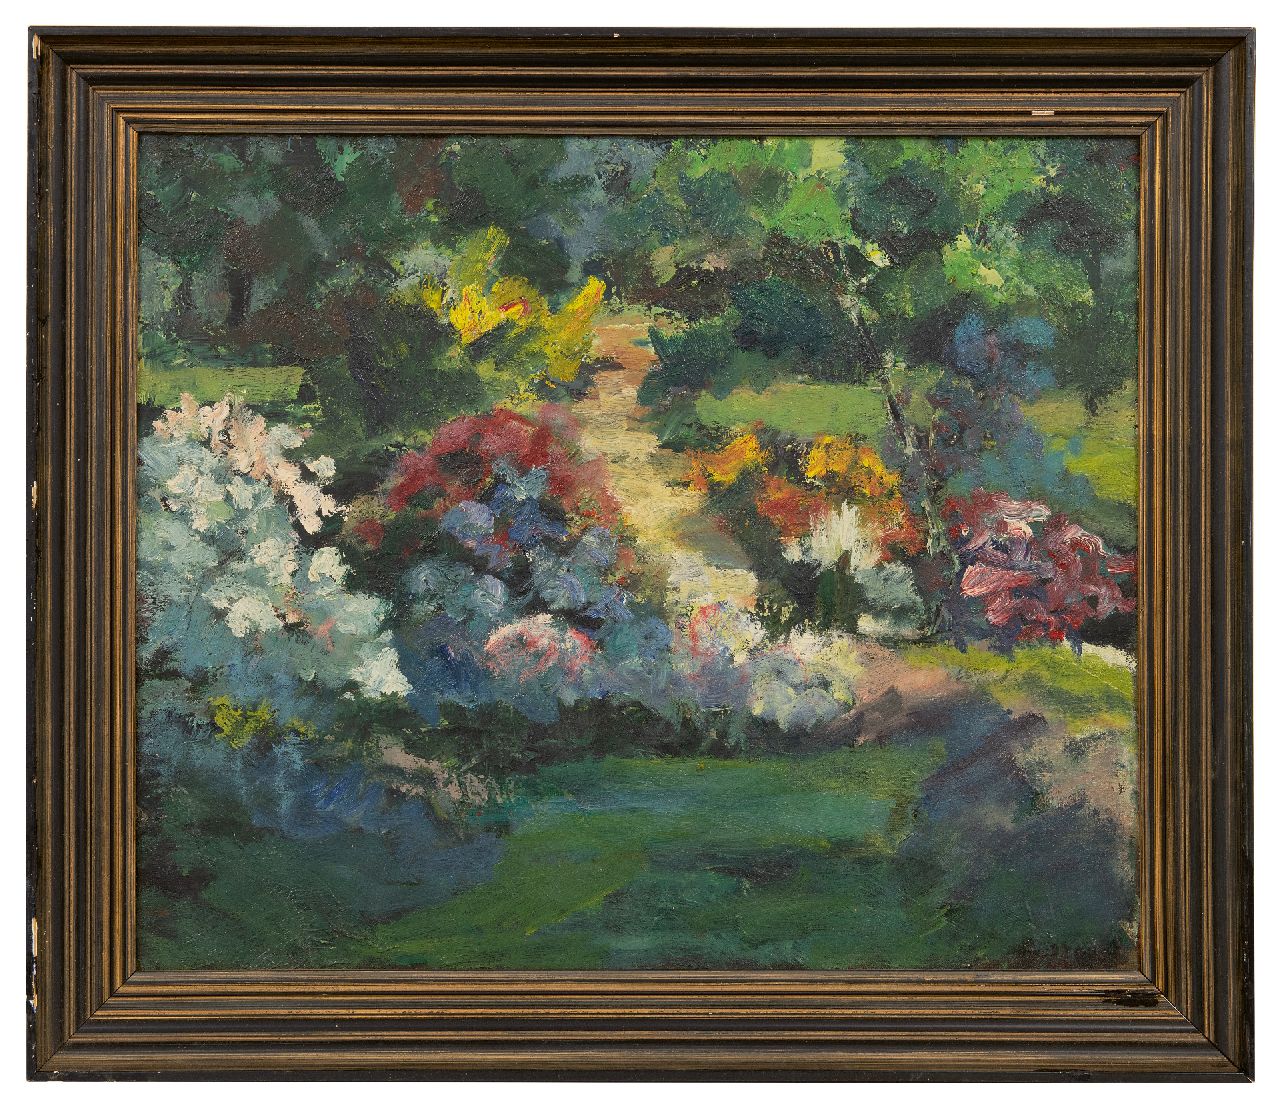 Leest J. van der | Jan van der Leest | Paintings offered for sale | Flower garden, oil on canvas 50.0 x 60.2 cm, signed l.r.